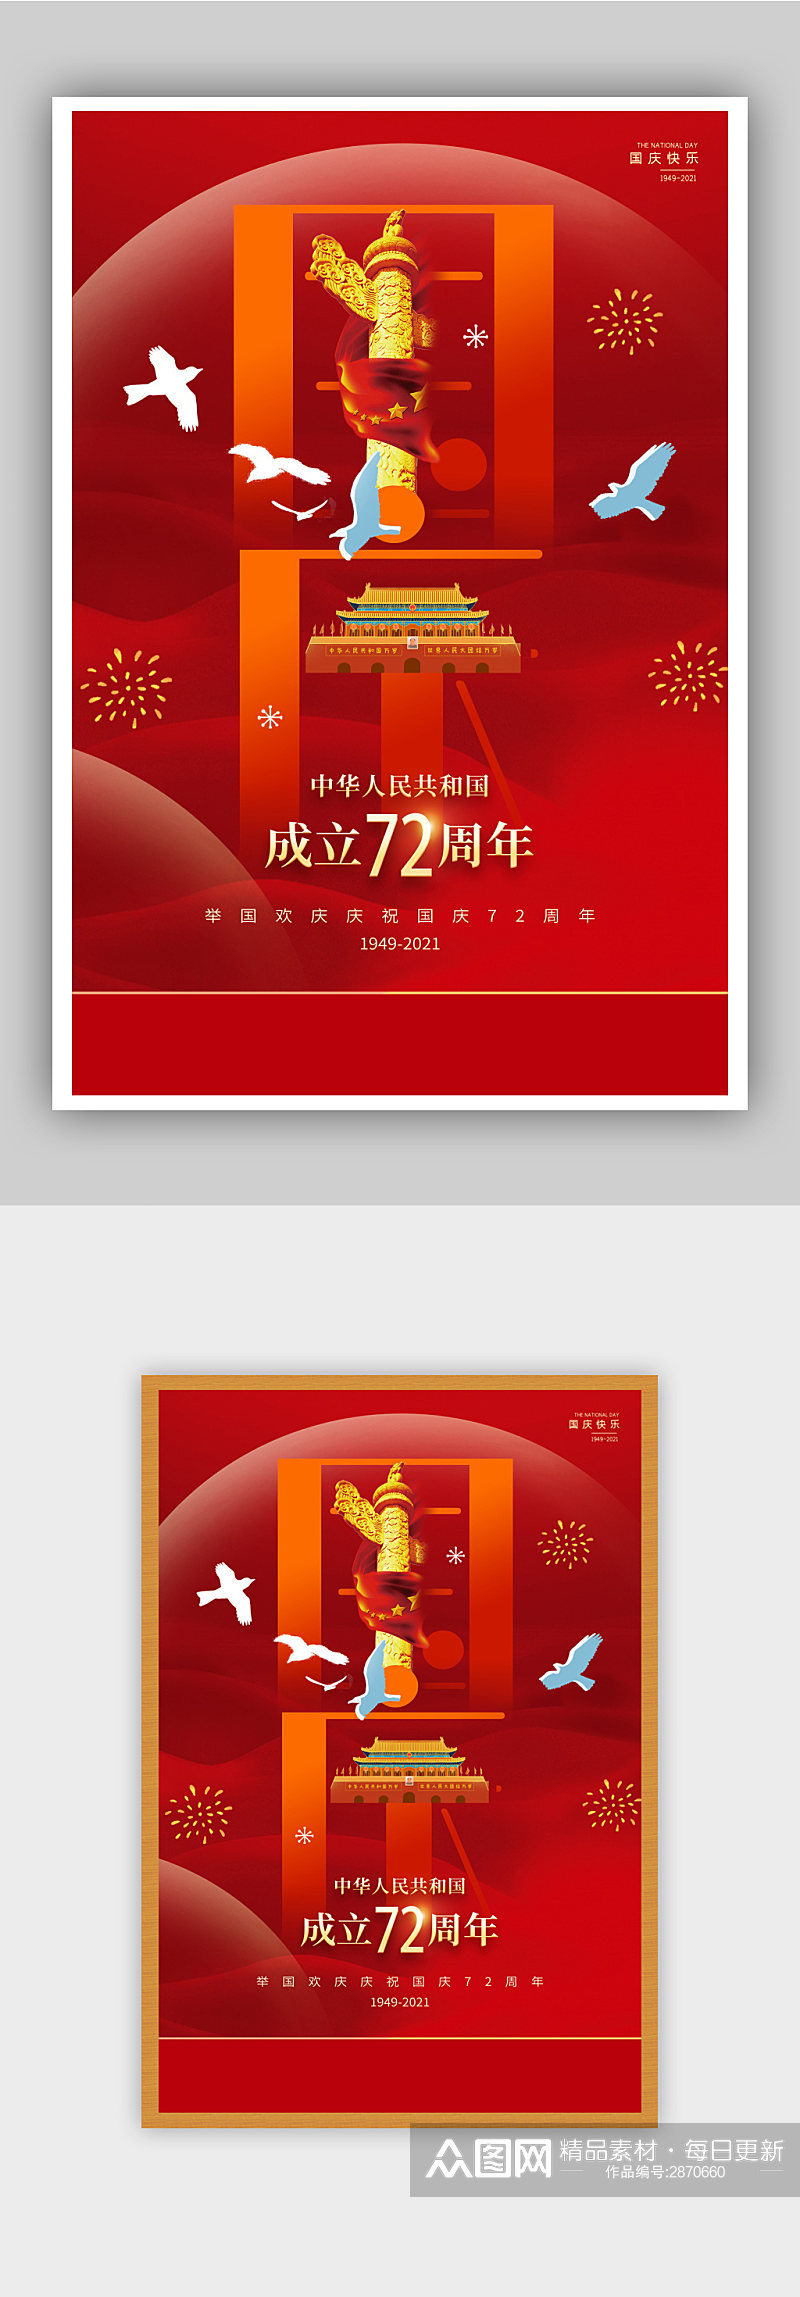 红色大气喜迎国庆节宣传海报素材